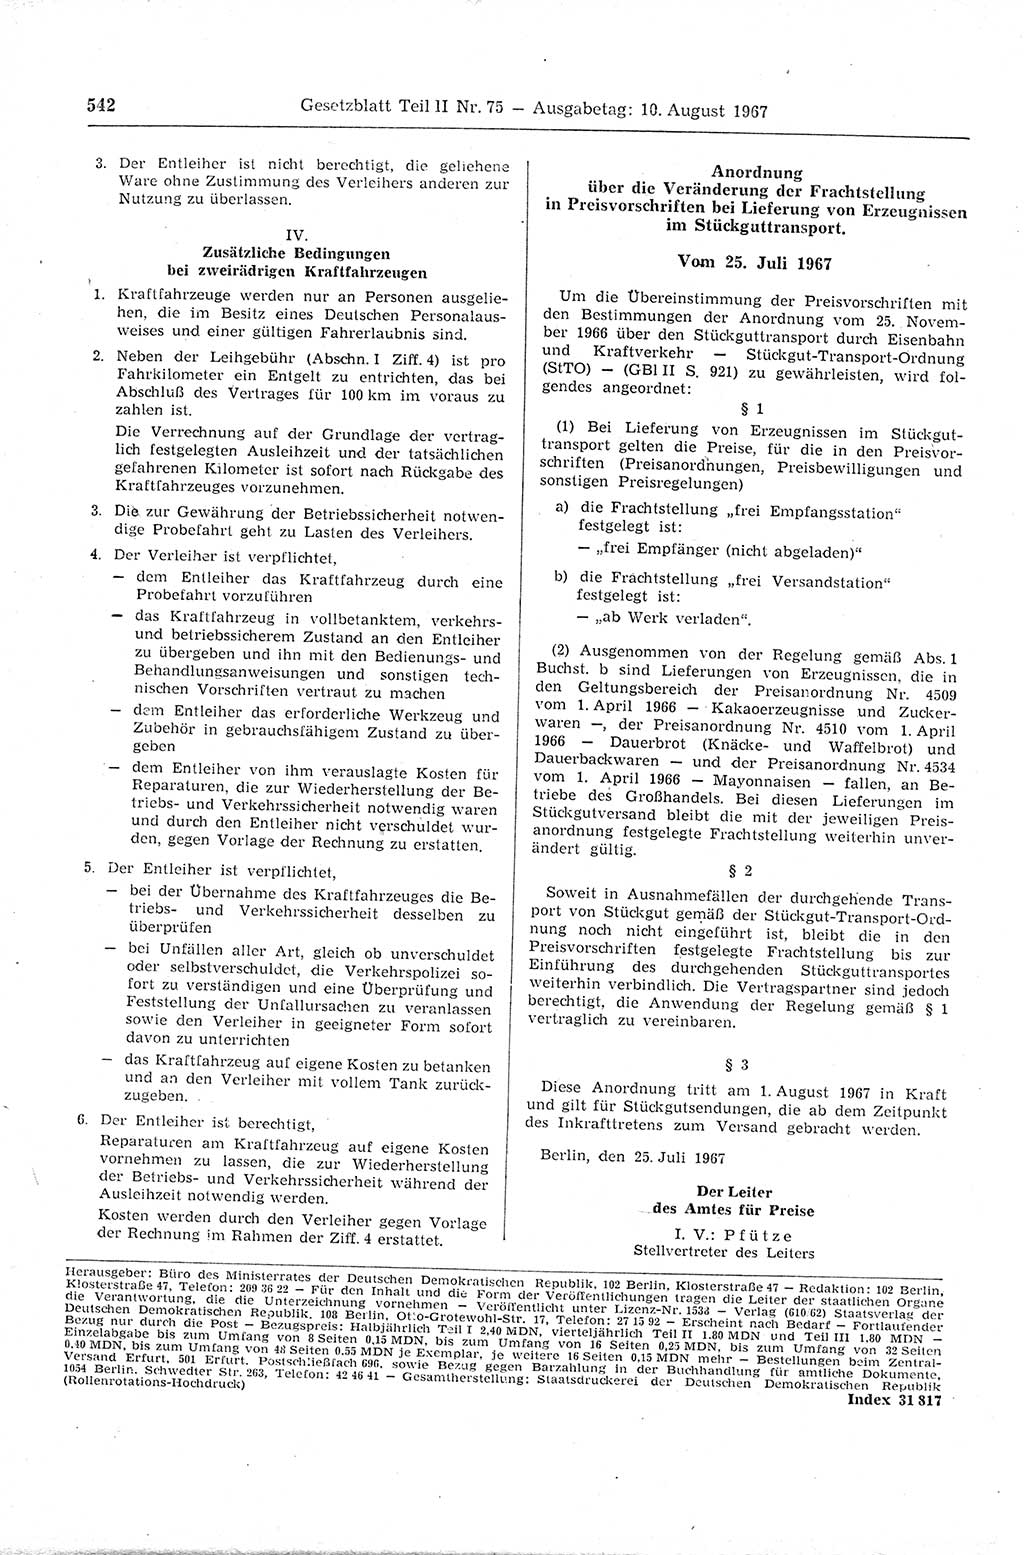 Gesetzblatt (GBl.) der Deutschen Demokratischen Republik (DDR) Teil ⅠⅠ 1967, Seite 542 (GBl. DDR ⅠⅠ 1967, S. 542)